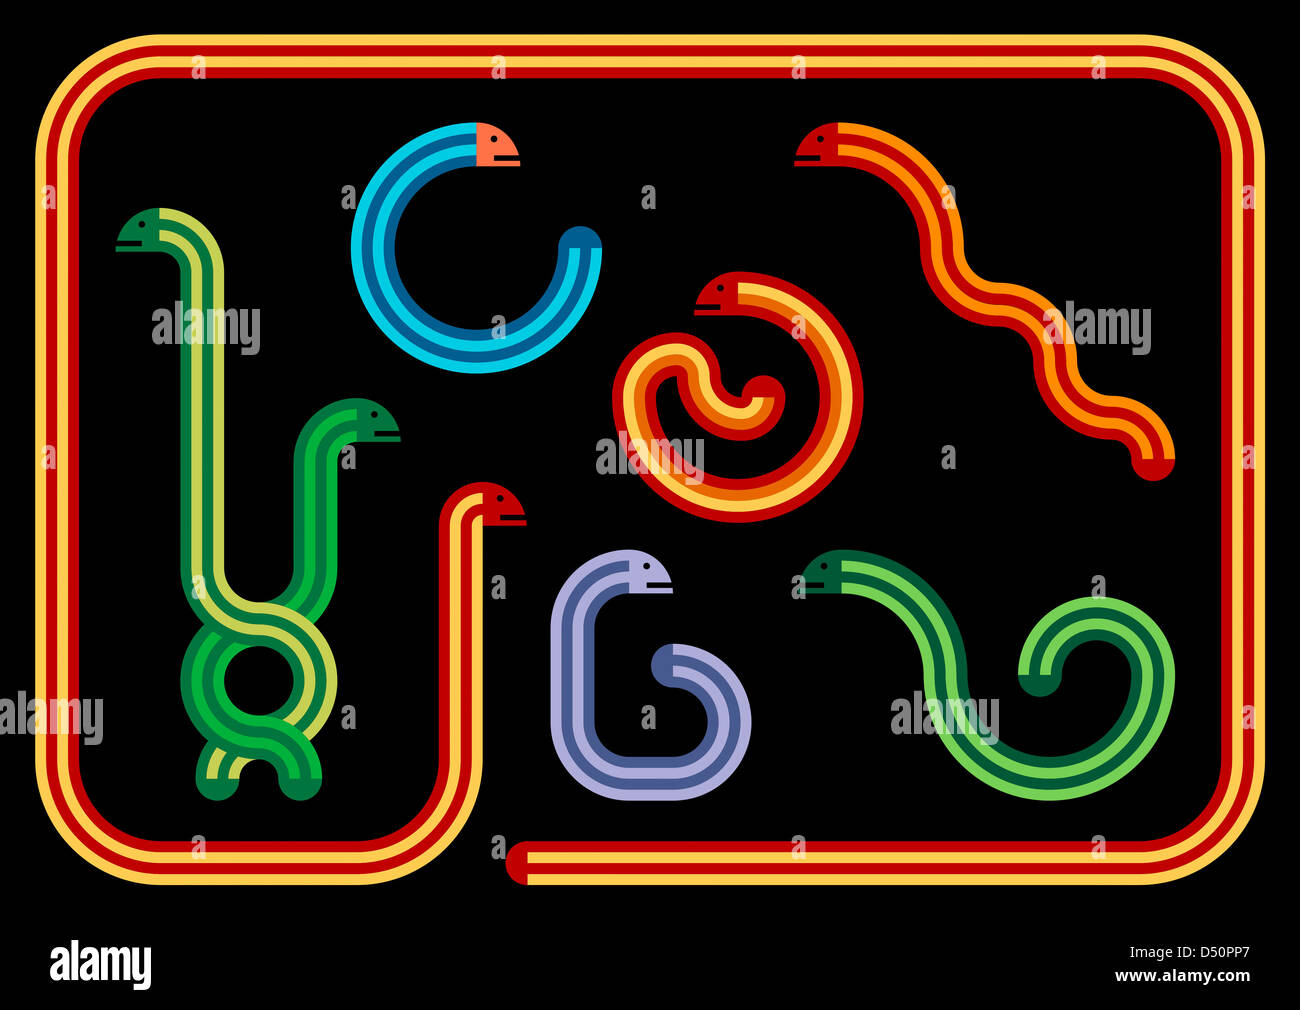 Ilustración - Colección de serpientes serpientes geométricas en diferentes colores y posiciones Foto de stock